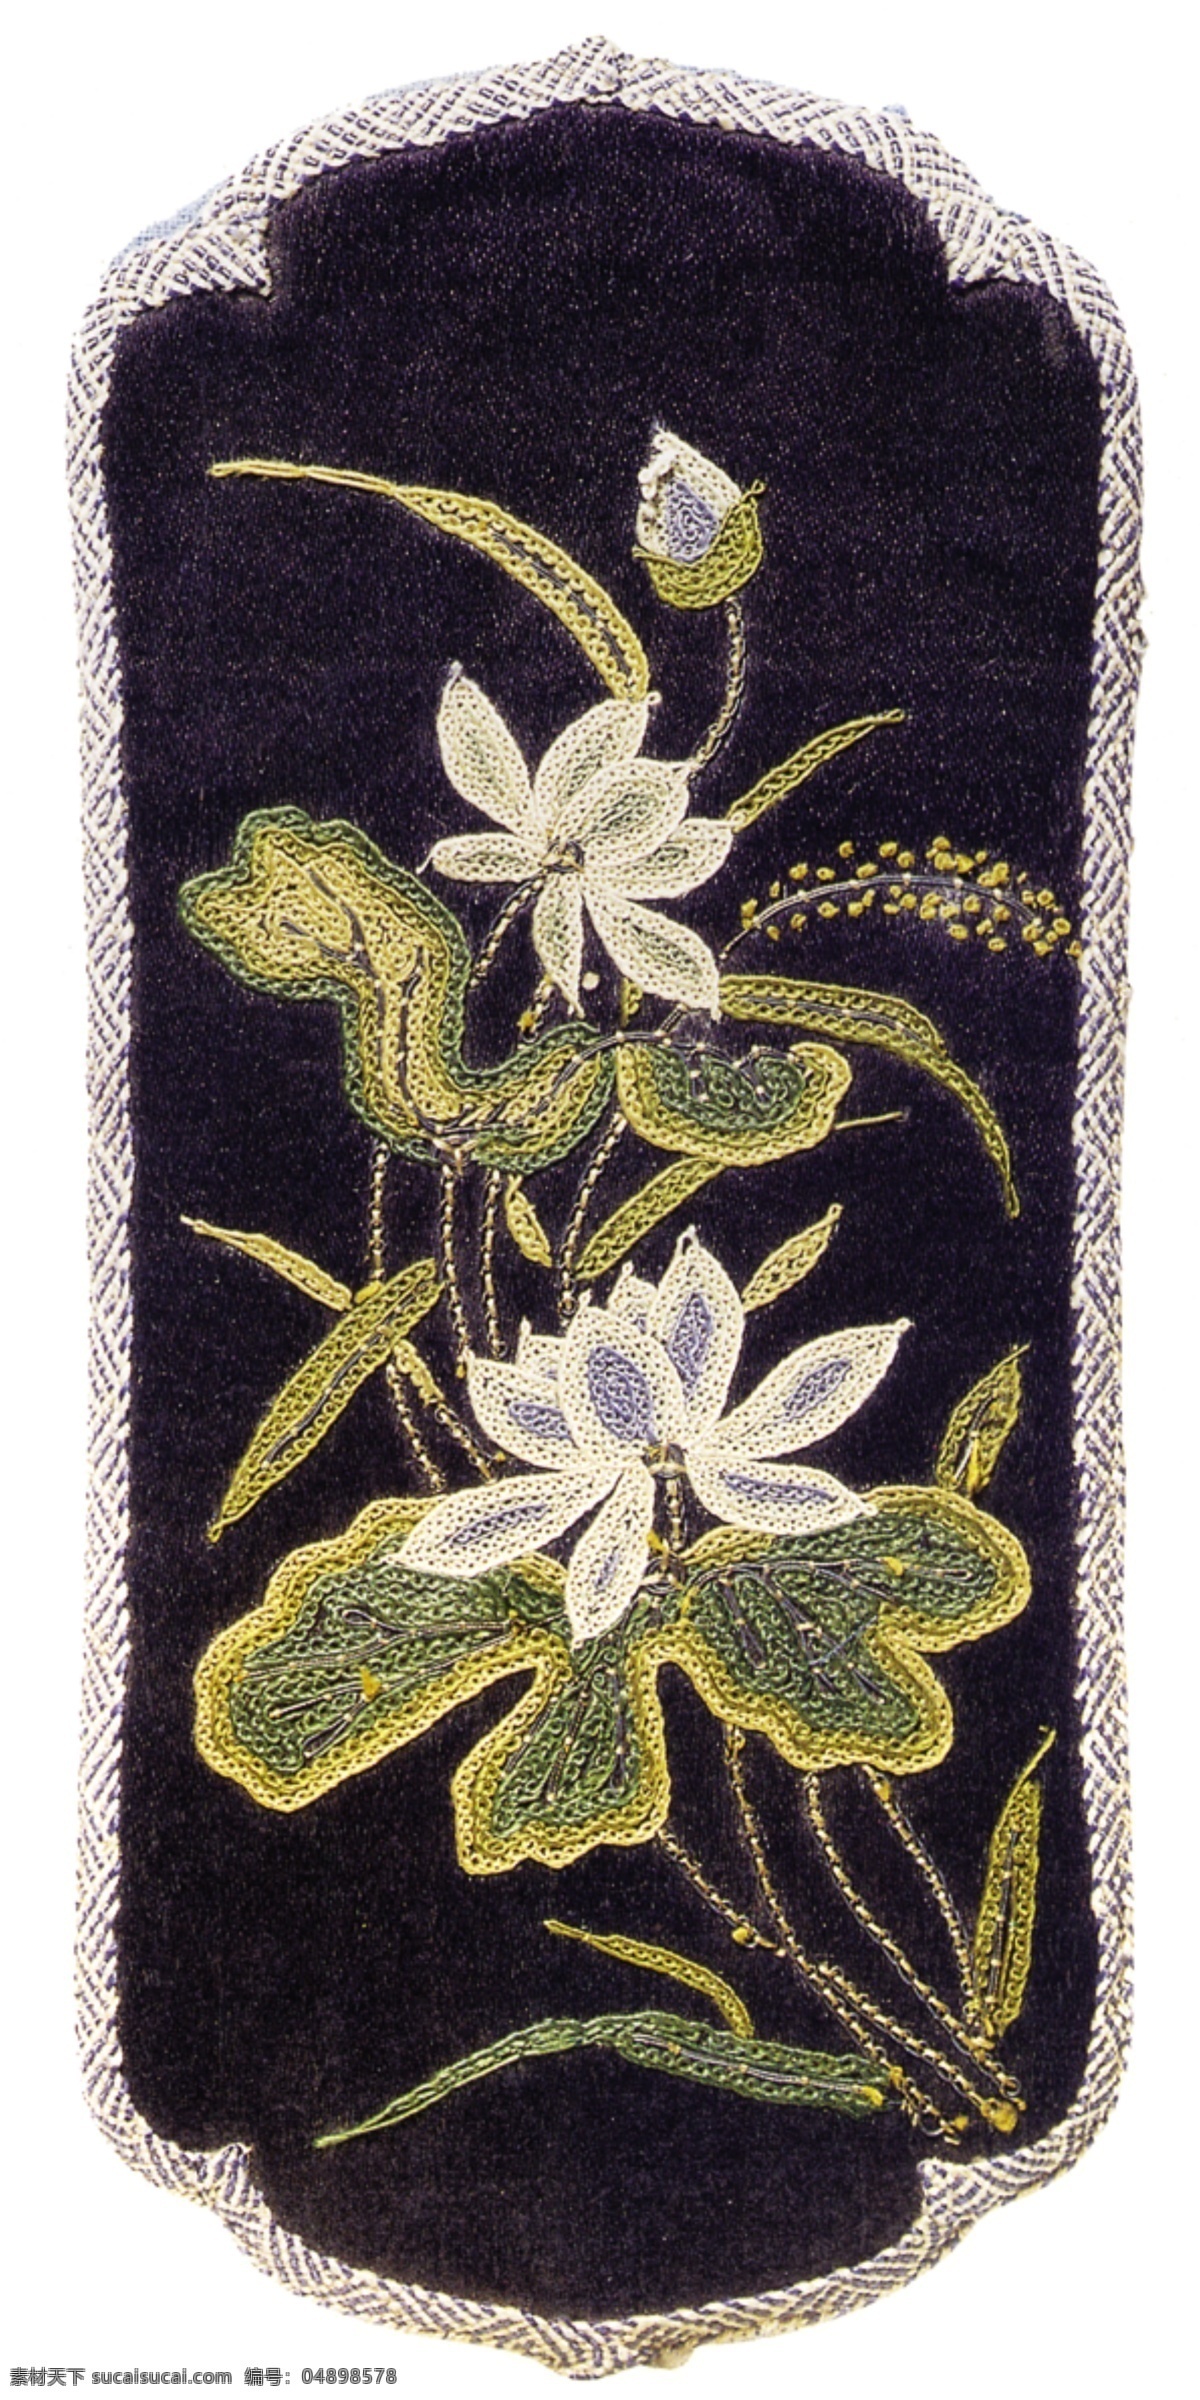 中式 古典 刺绣 荷花 开来 大图 布纹 龙纹 贴画